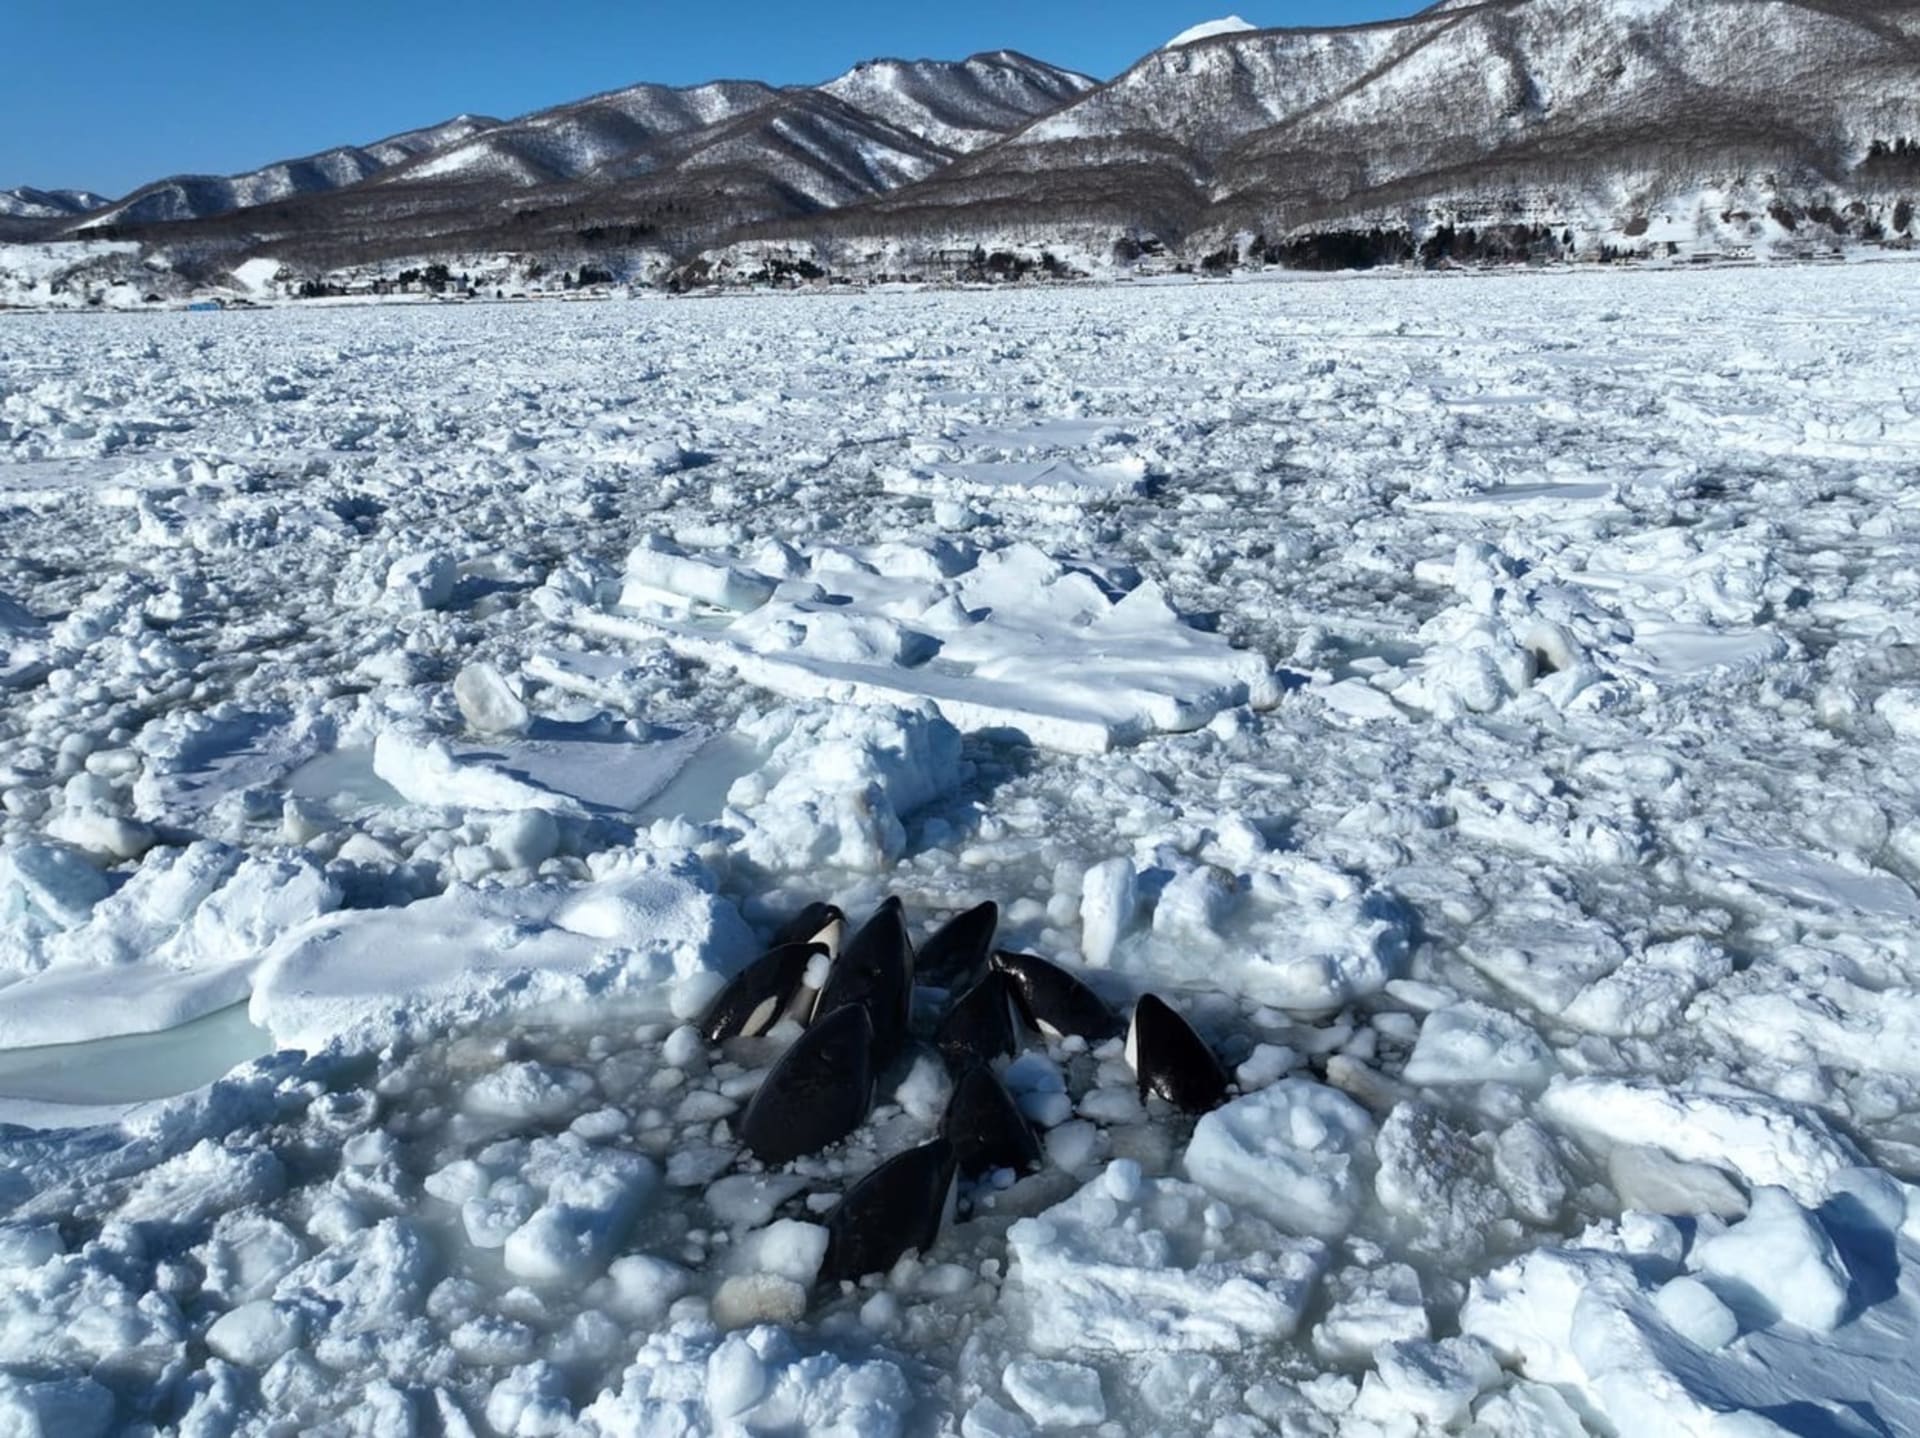 Uvězněné kosatky v ledu den bojovaly o život